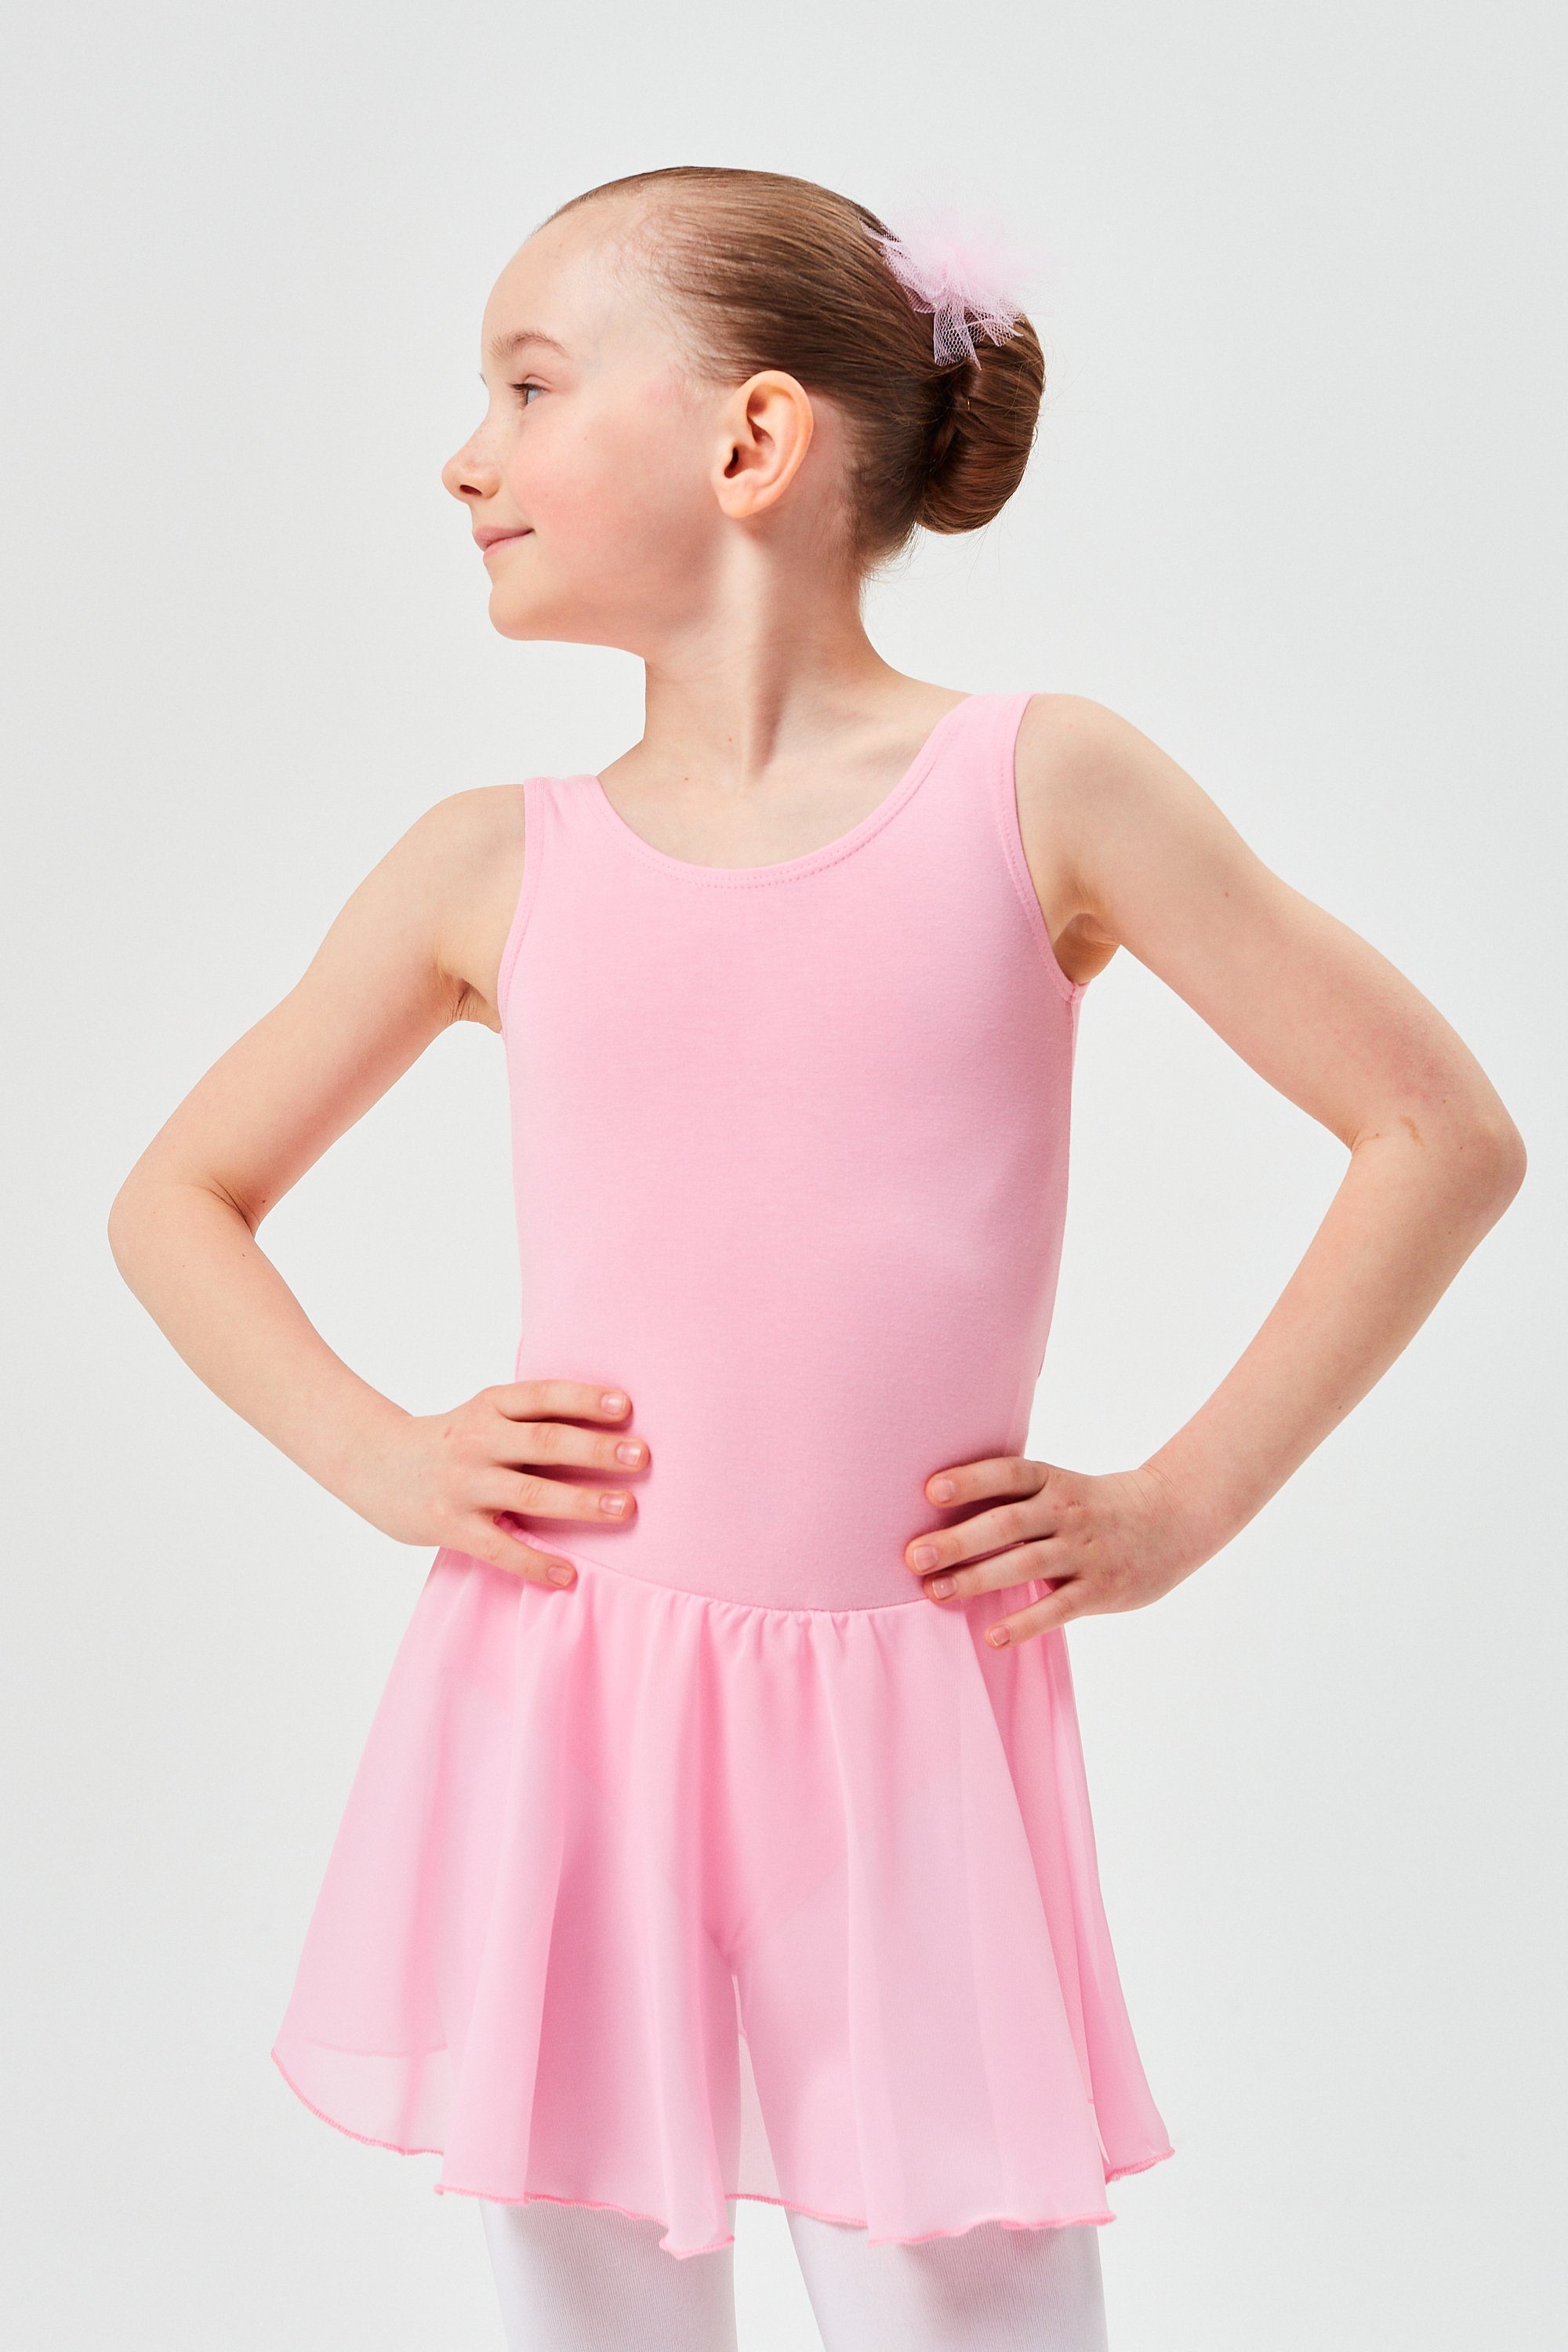 tanzmuster Chiffonkleid Ballett Trikot Minnie mit Chiffon Röckchen Ballettkleid für Mädchen aus wunderbar weichem Baumwollmaterial rosa